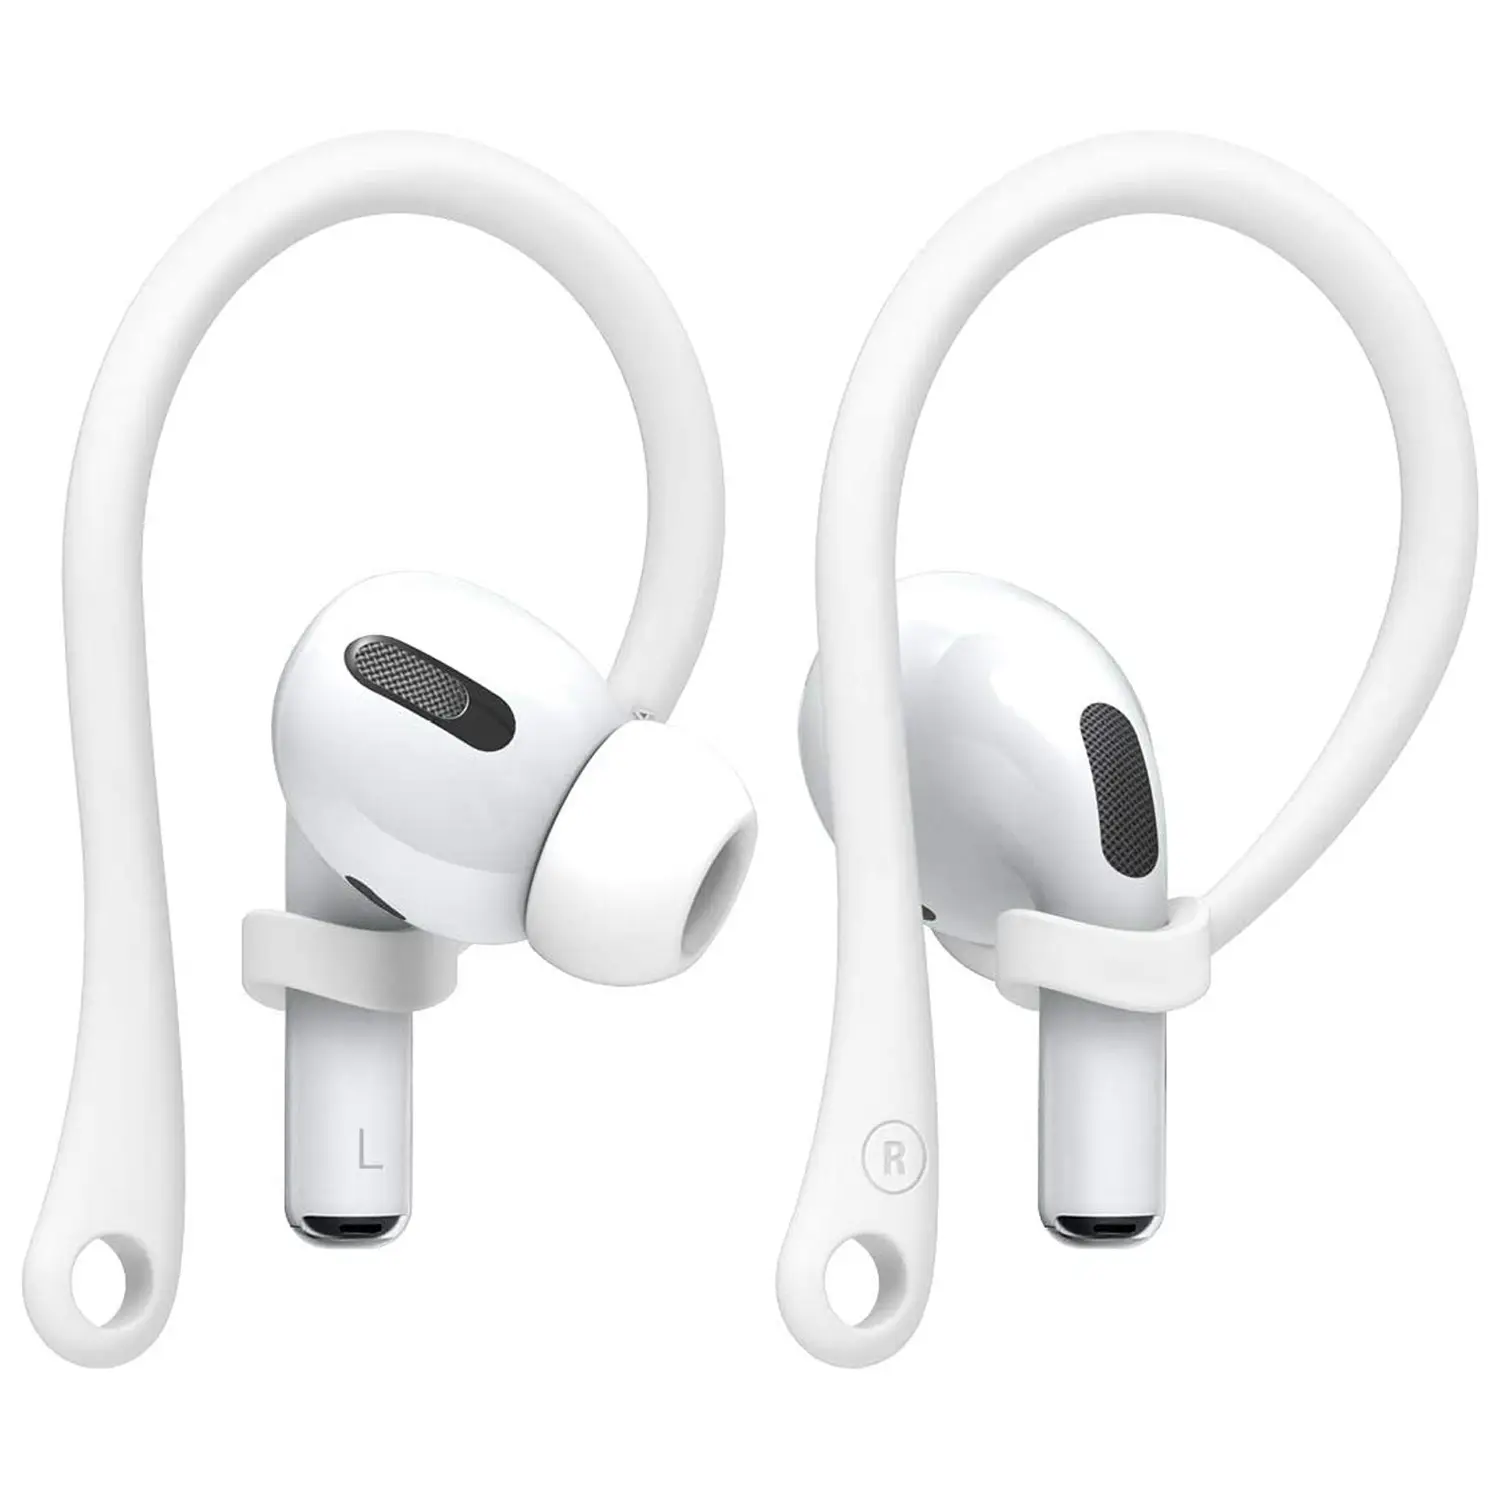 สำหรับ Apple Airpods Pro กีฬา Anti Loss หูฟัง3rd Generation หูฟังชนิดใช้สำหรับ Airpods Pro